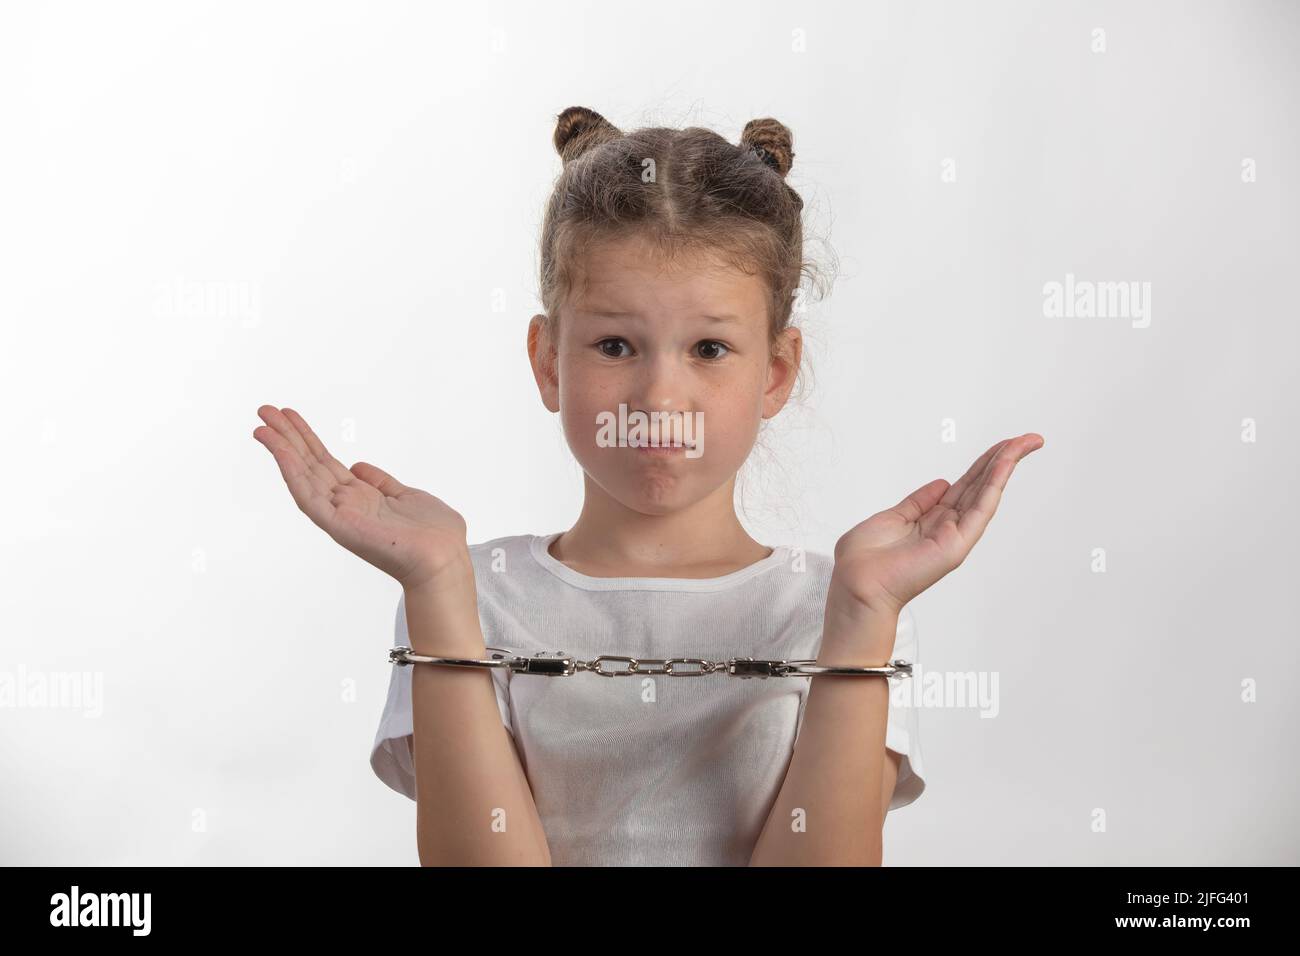 Junge weibliche Flucht Künstlerin - Mädchen mit Handschellen - ein Kind in Schwierigkeiten Stockfoto